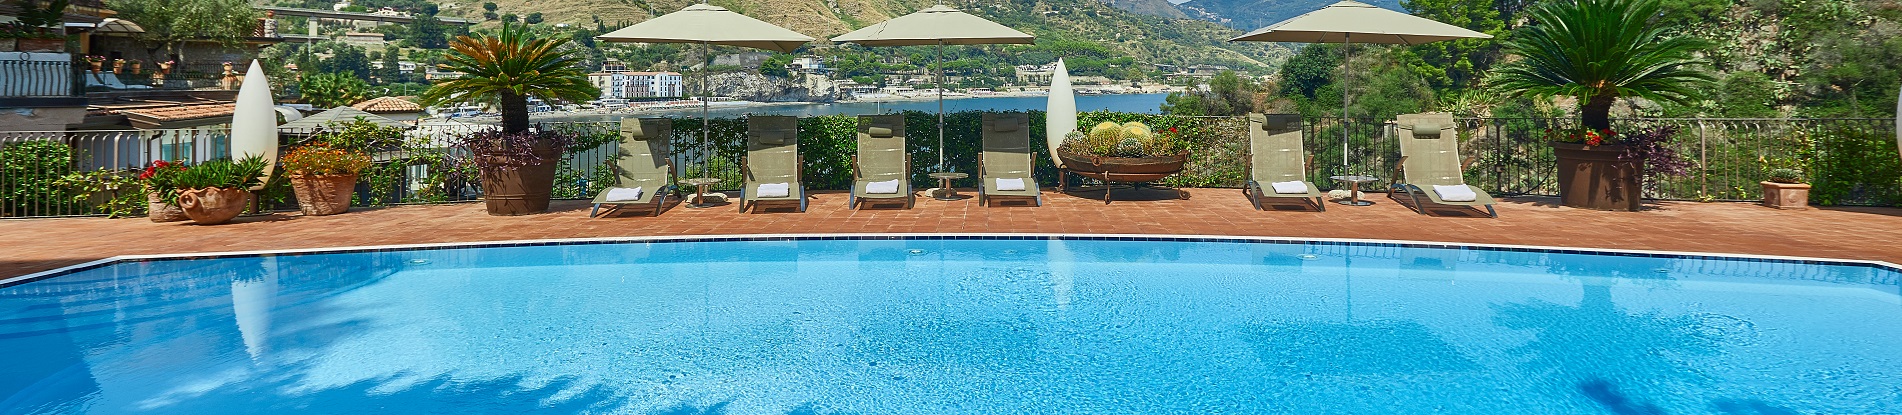 Ville di lusso in Sicilia con piscina